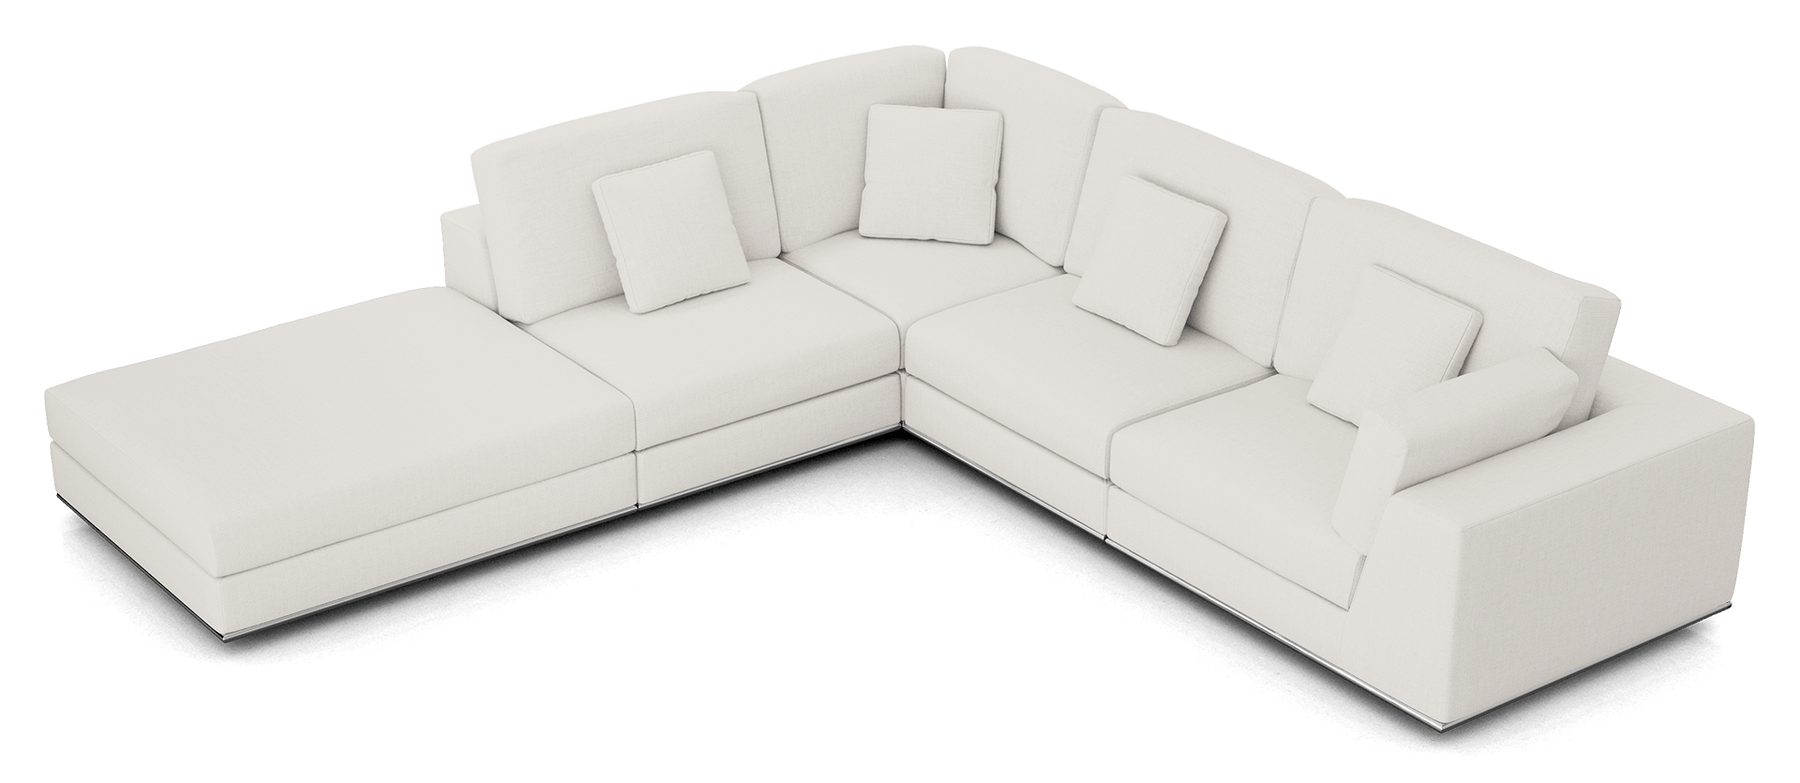 Perry Modular Sofa 02